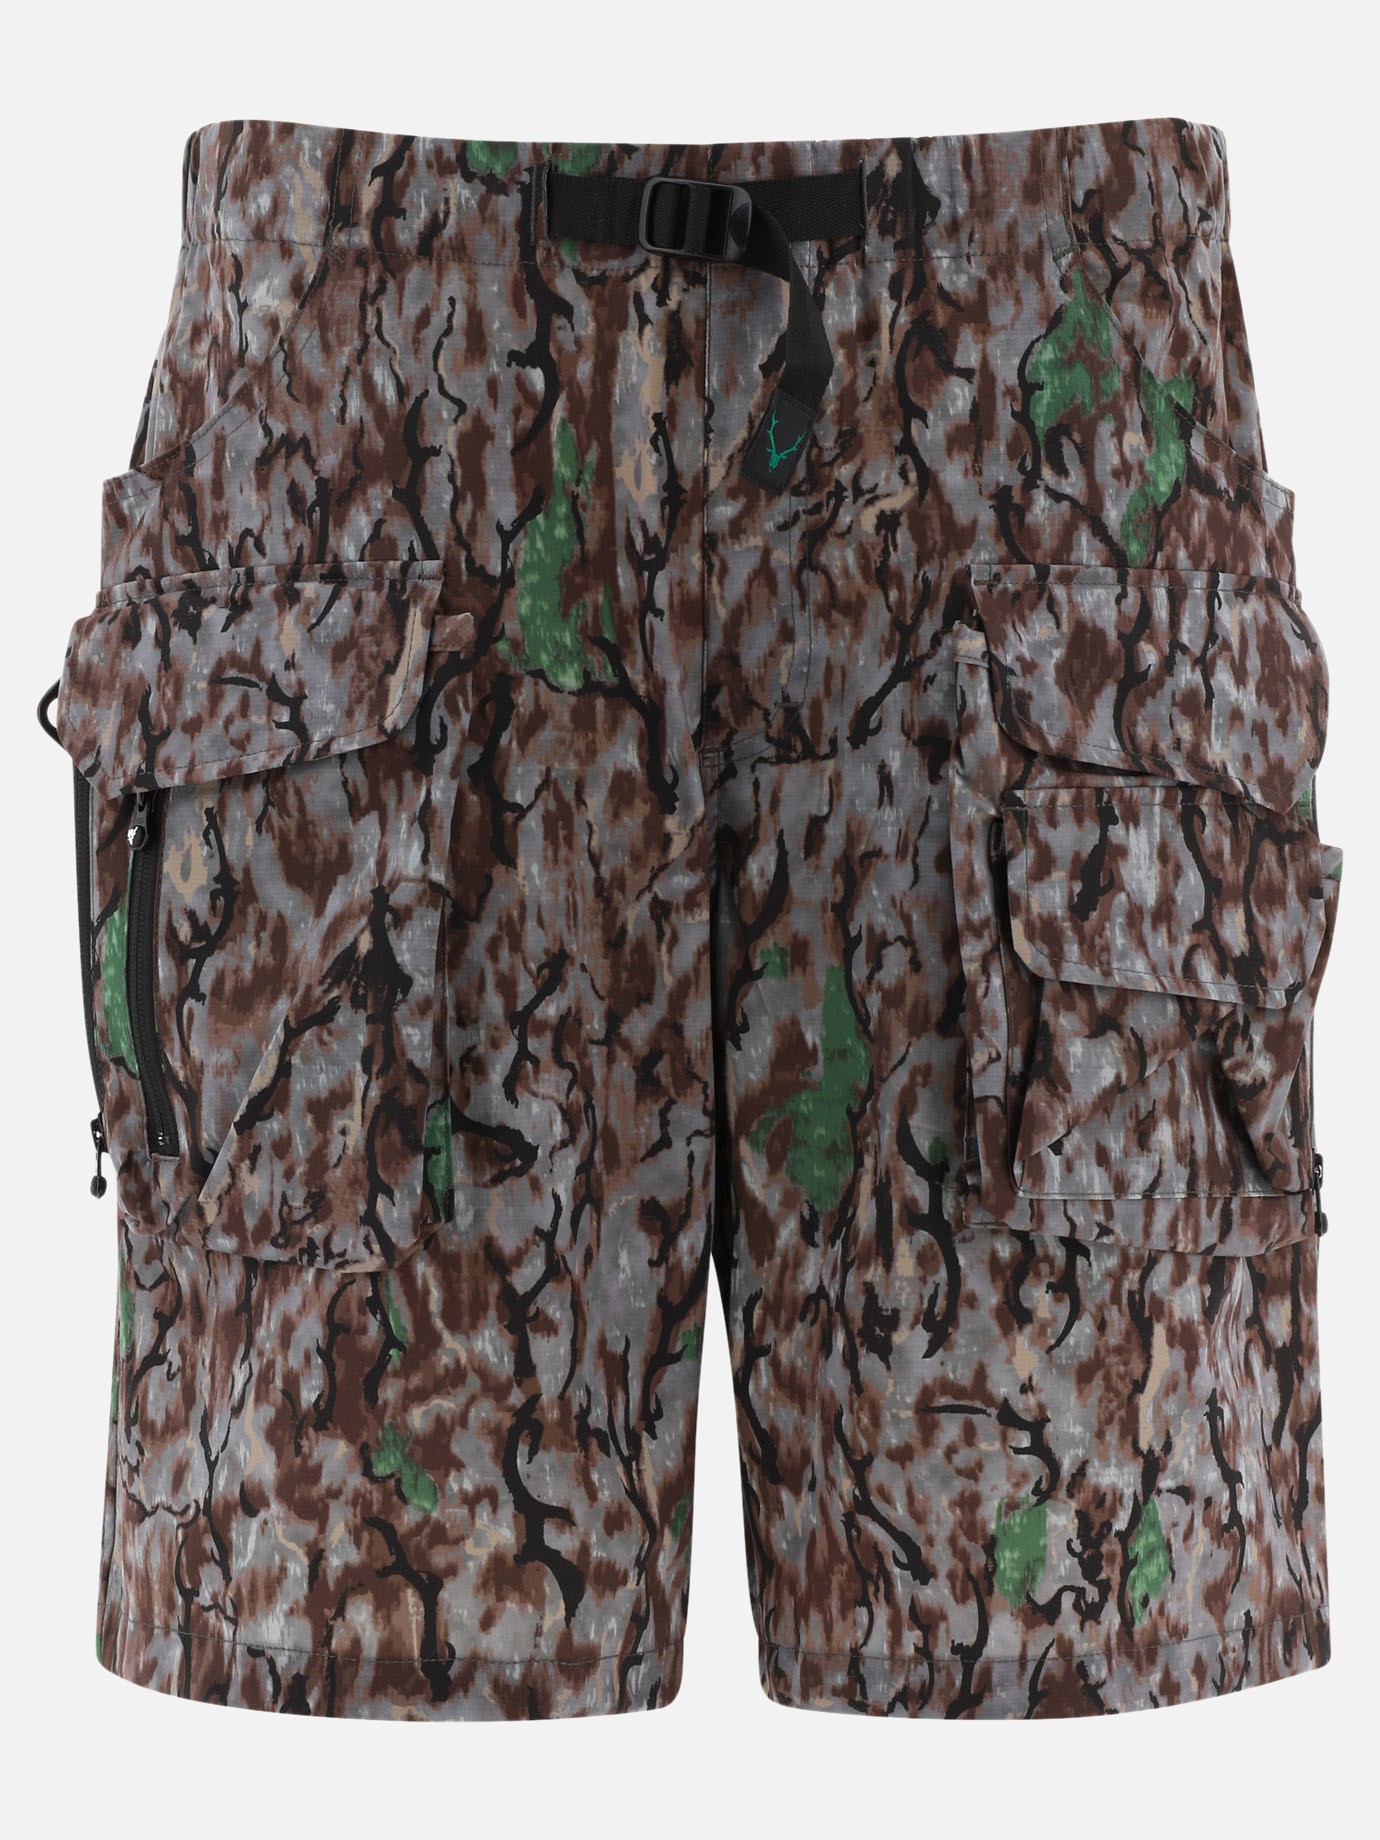 Camouflage cargo shorts